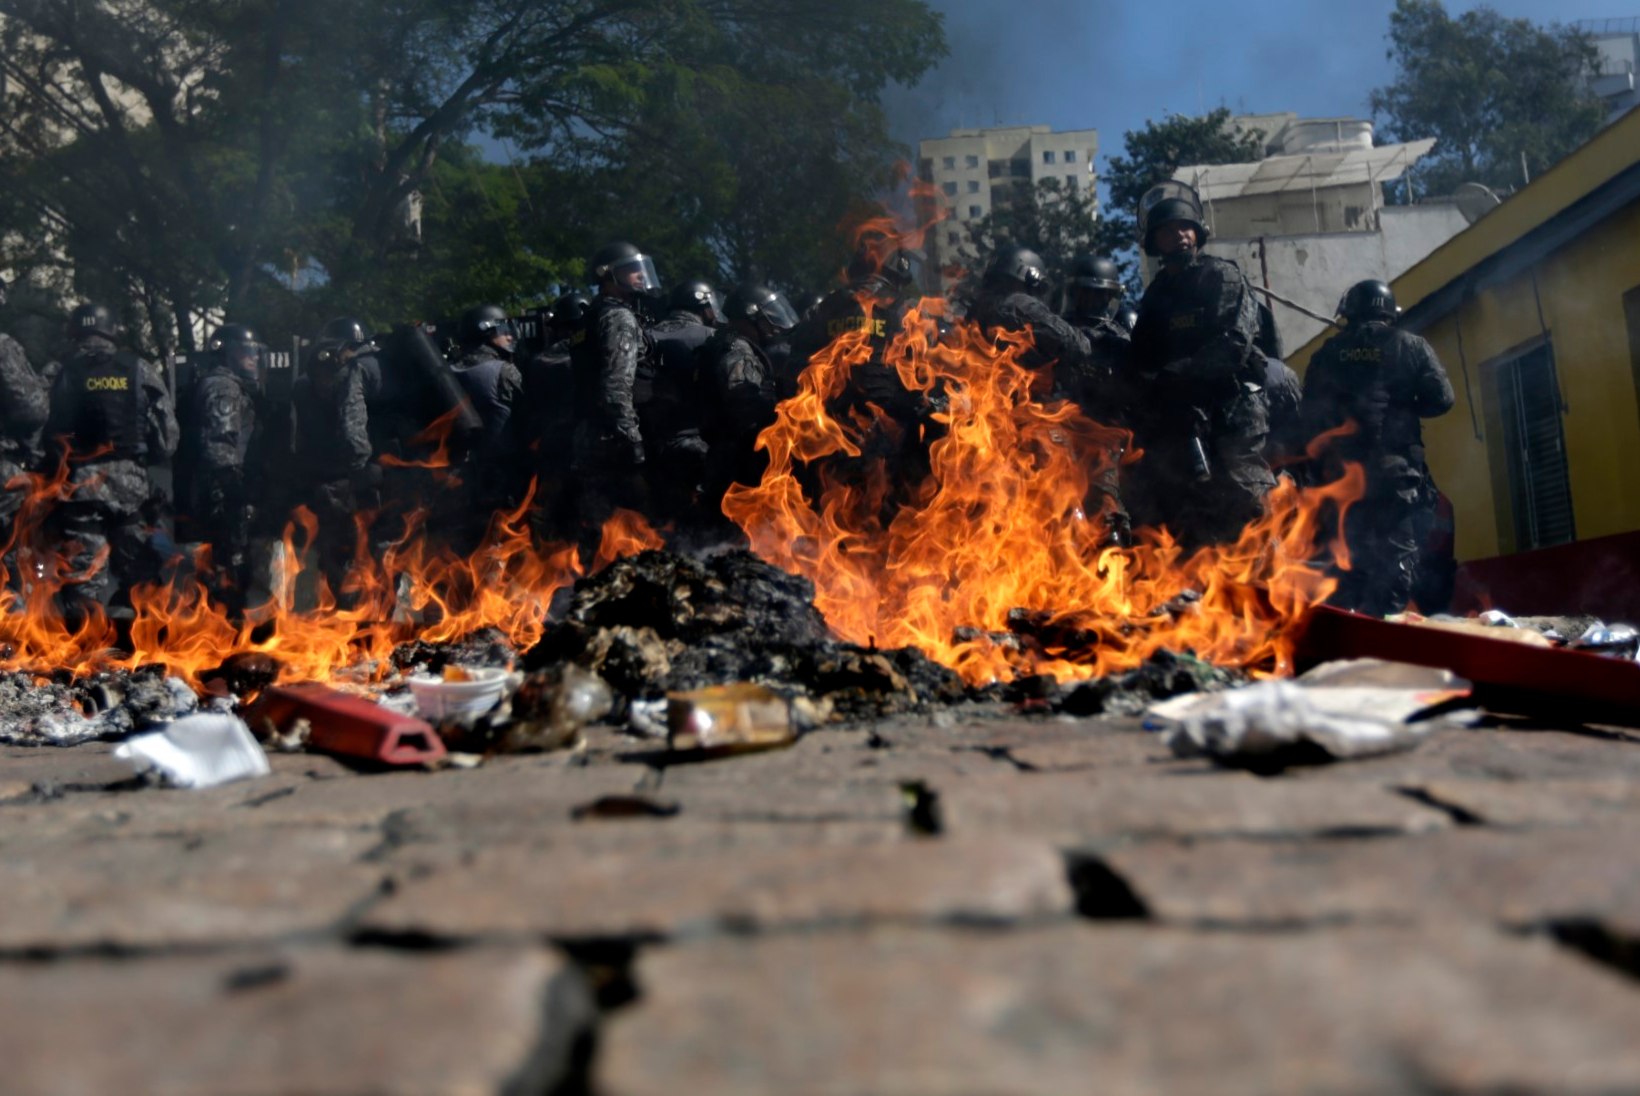 GALERII: Sao Paulos vallandus avamängu eel madin